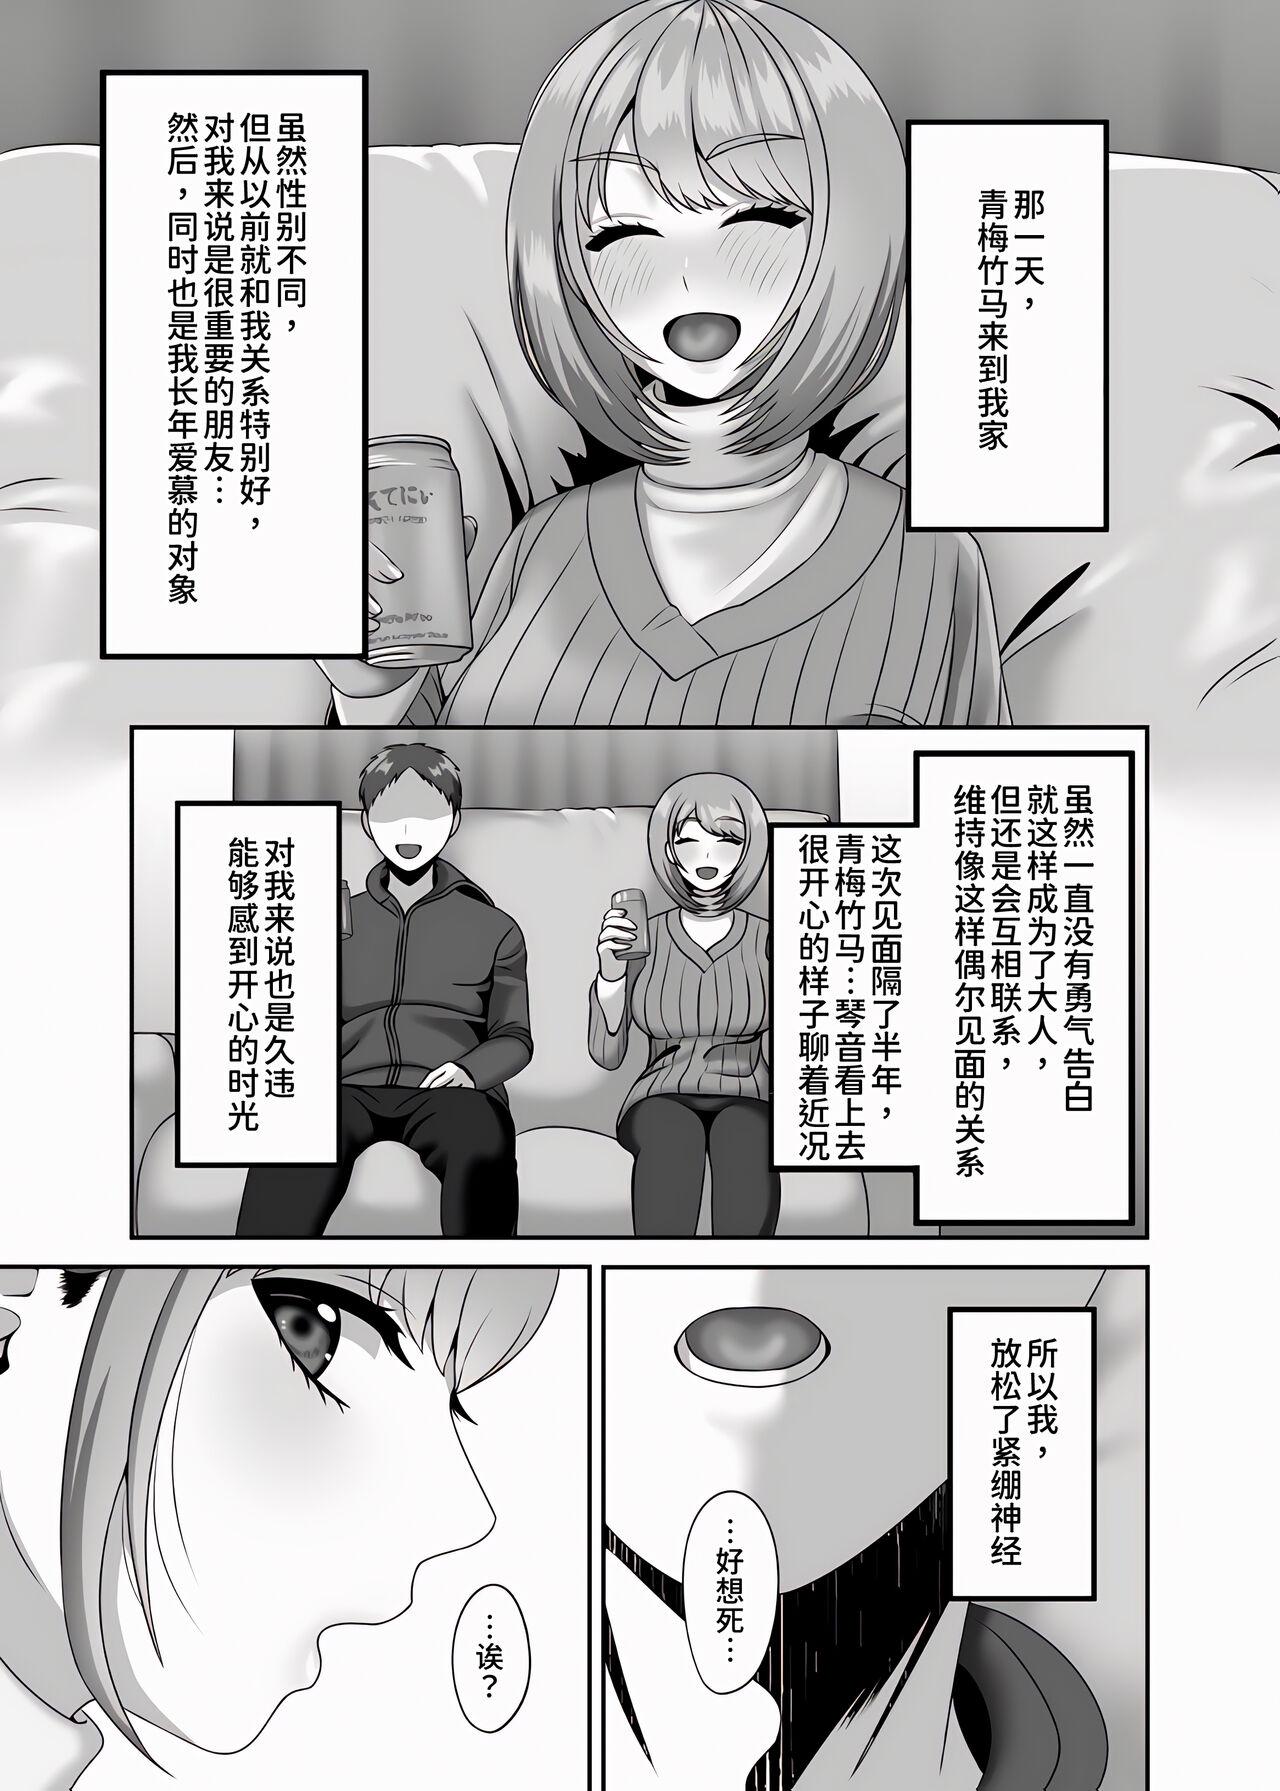 Tease Shi ga futari o wakatsu mae ni shitai koto - Original Aunty - Page 3